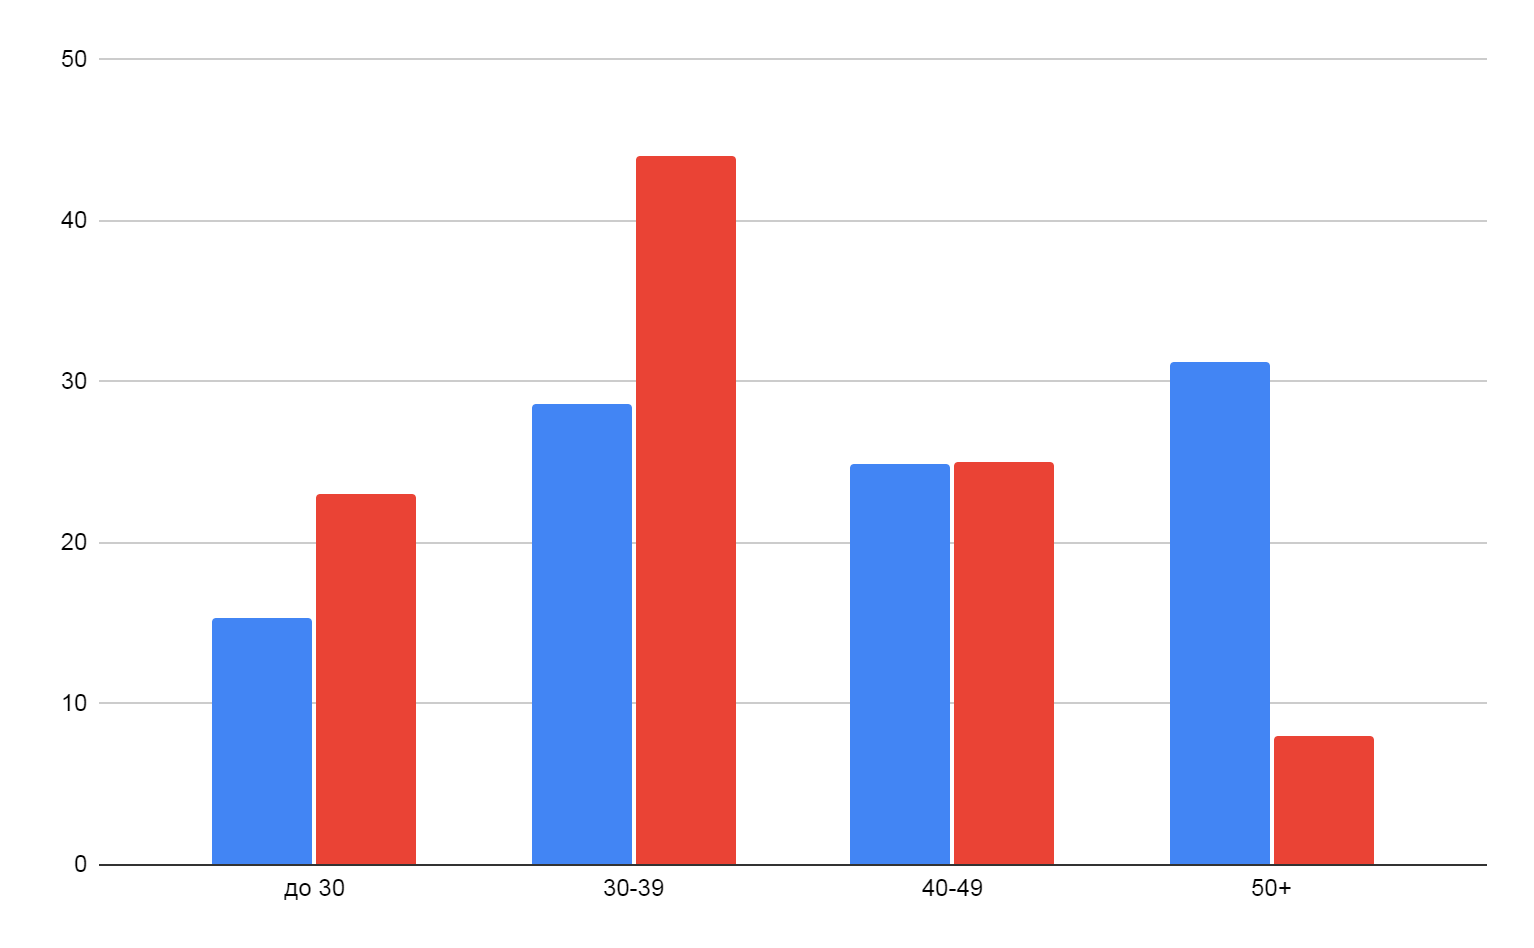 Возраст российских (красный) и зарубежных (синий) фрилансеров в процентах от общего числа опрошенных